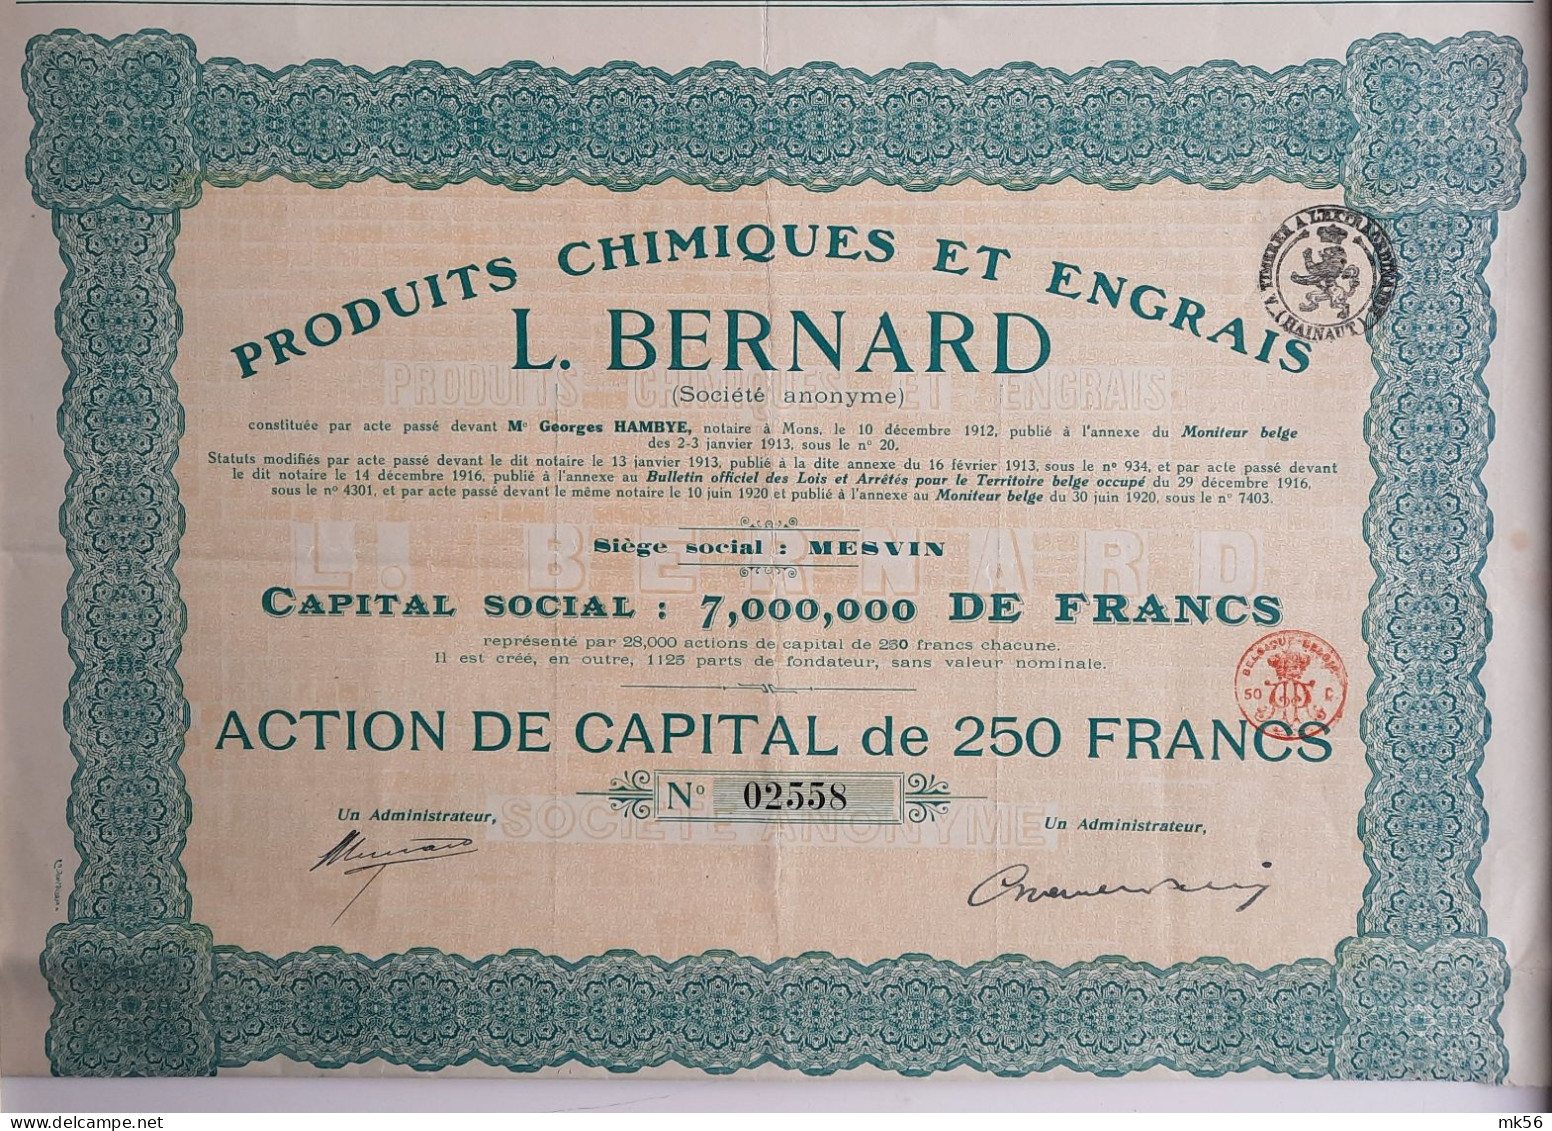 Produits Chimiques Et Engrais - L.Bernard - Mesvin - 1920 - Agriculture